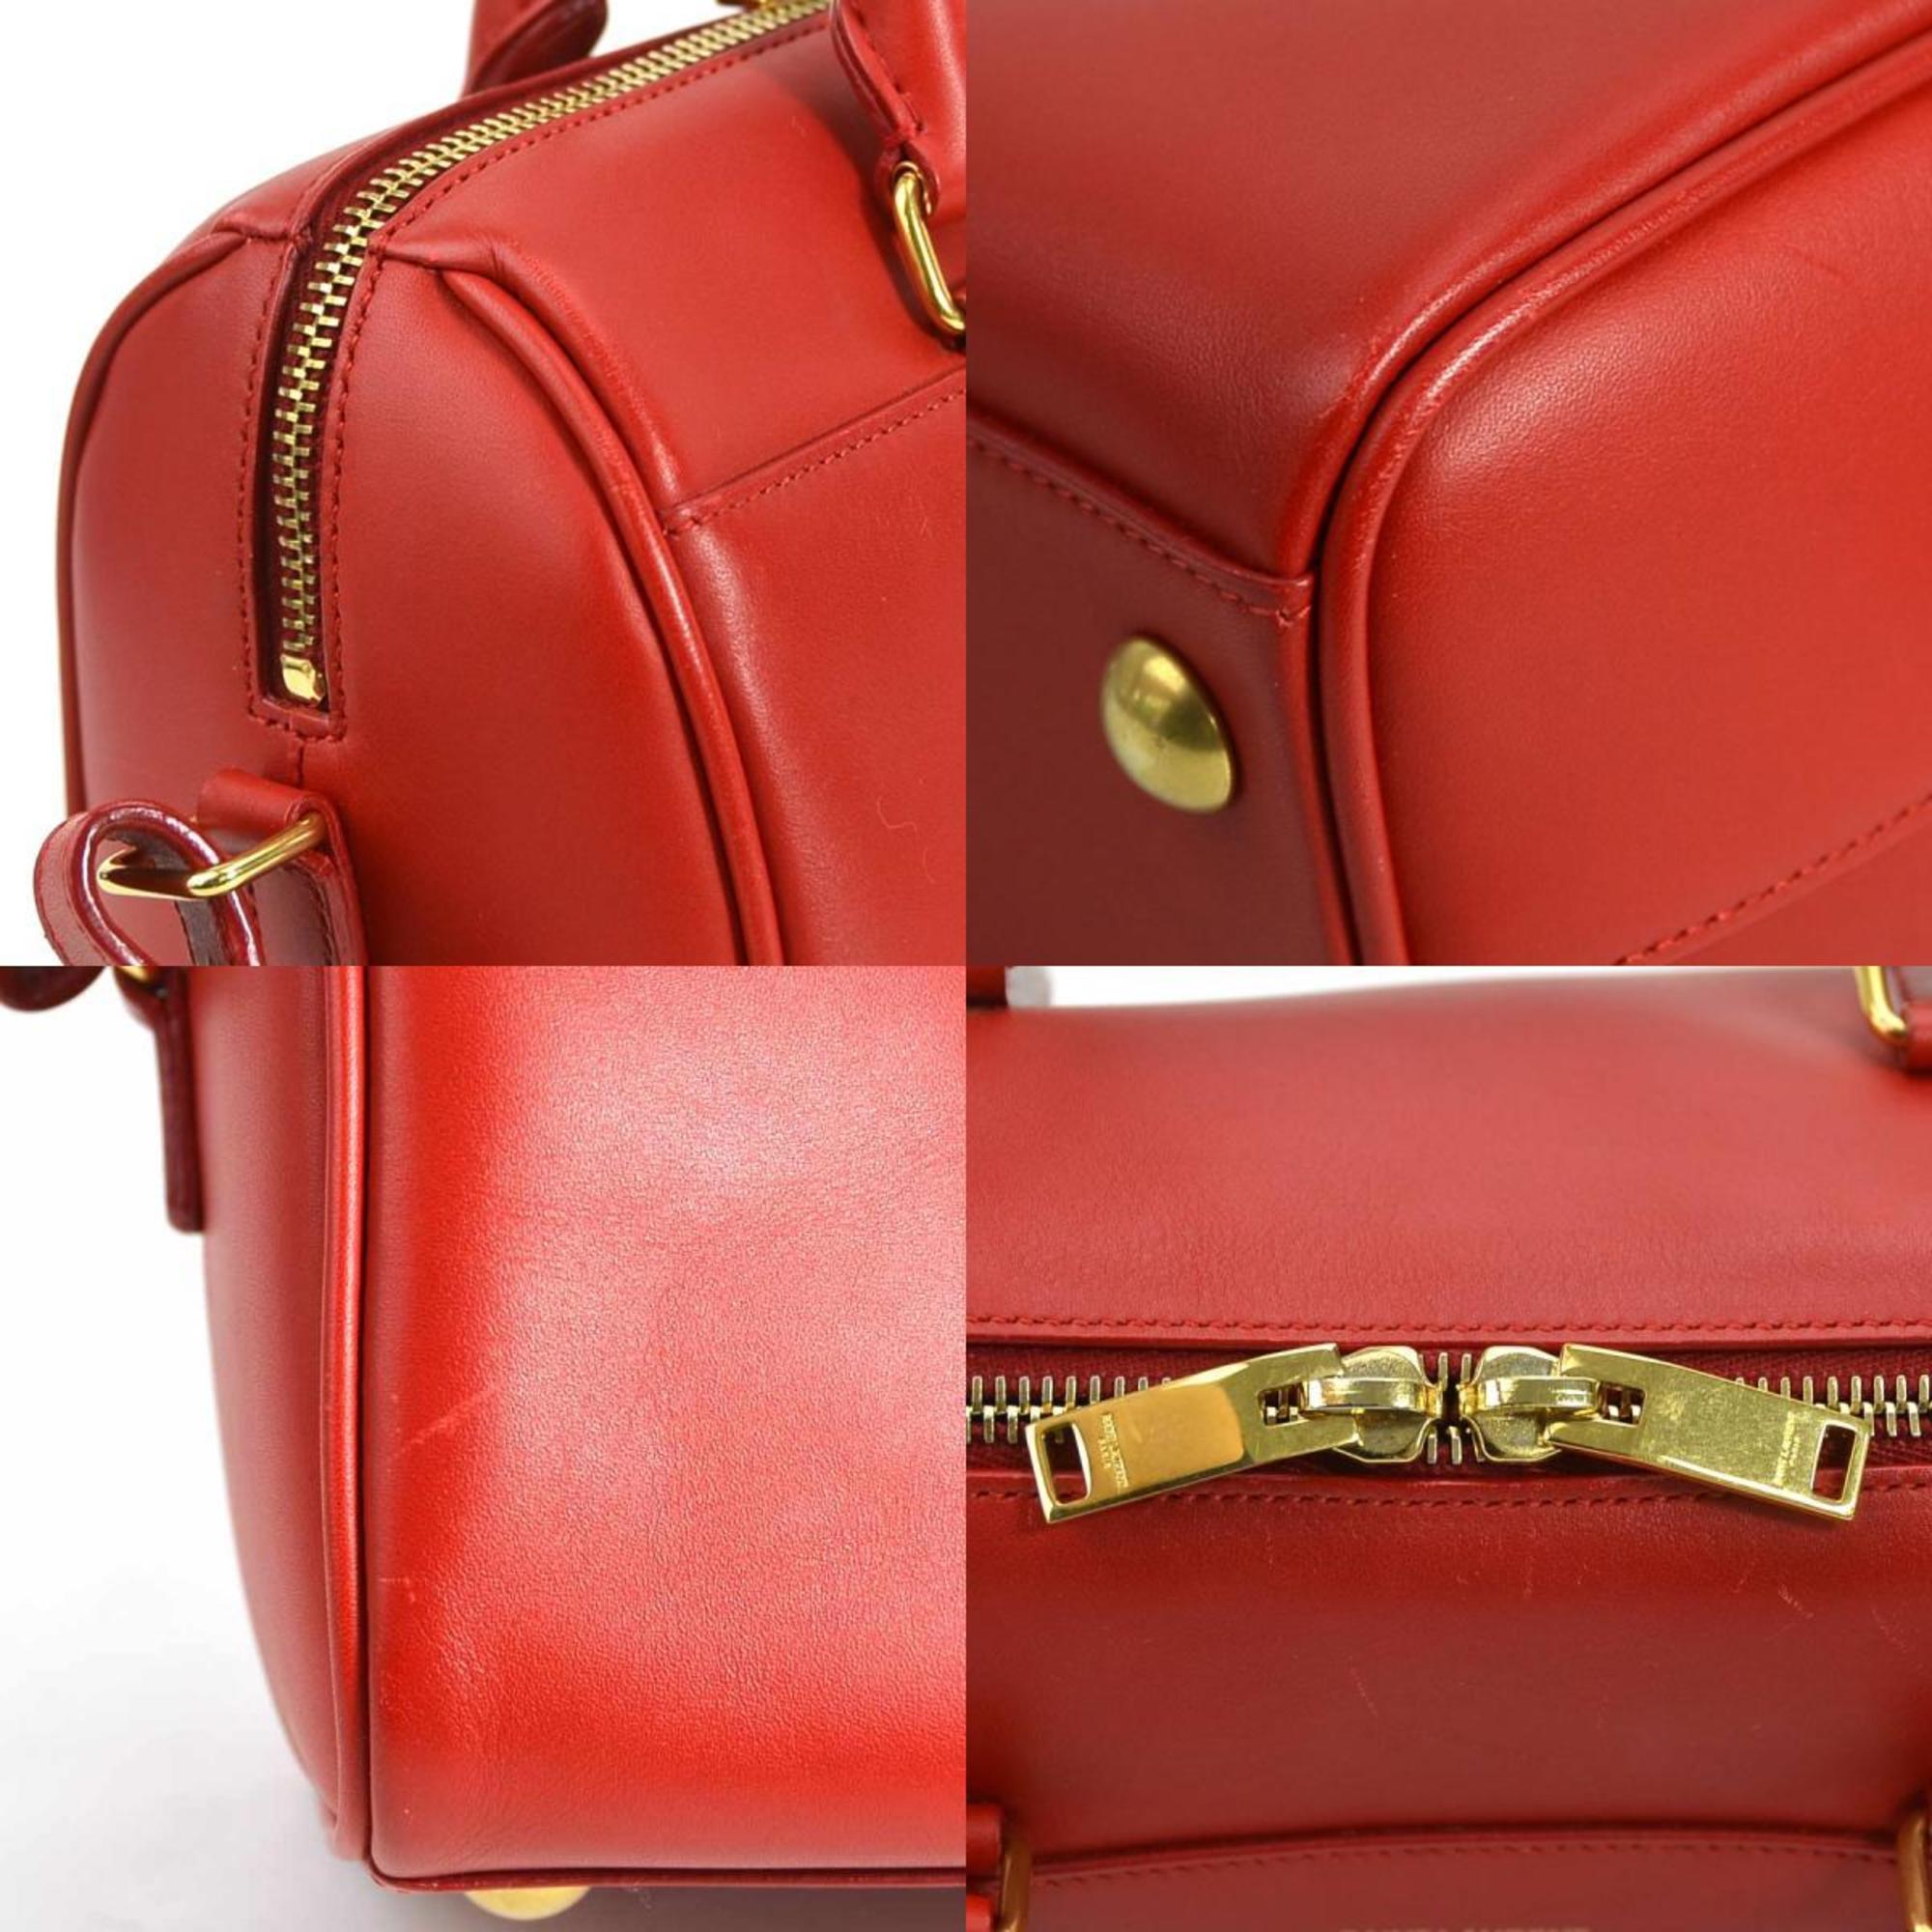 Saint Laurent SAINT LAURENT Handbag Shoulder Bag Baby Duffle Leather Red Gold Women's e55995f